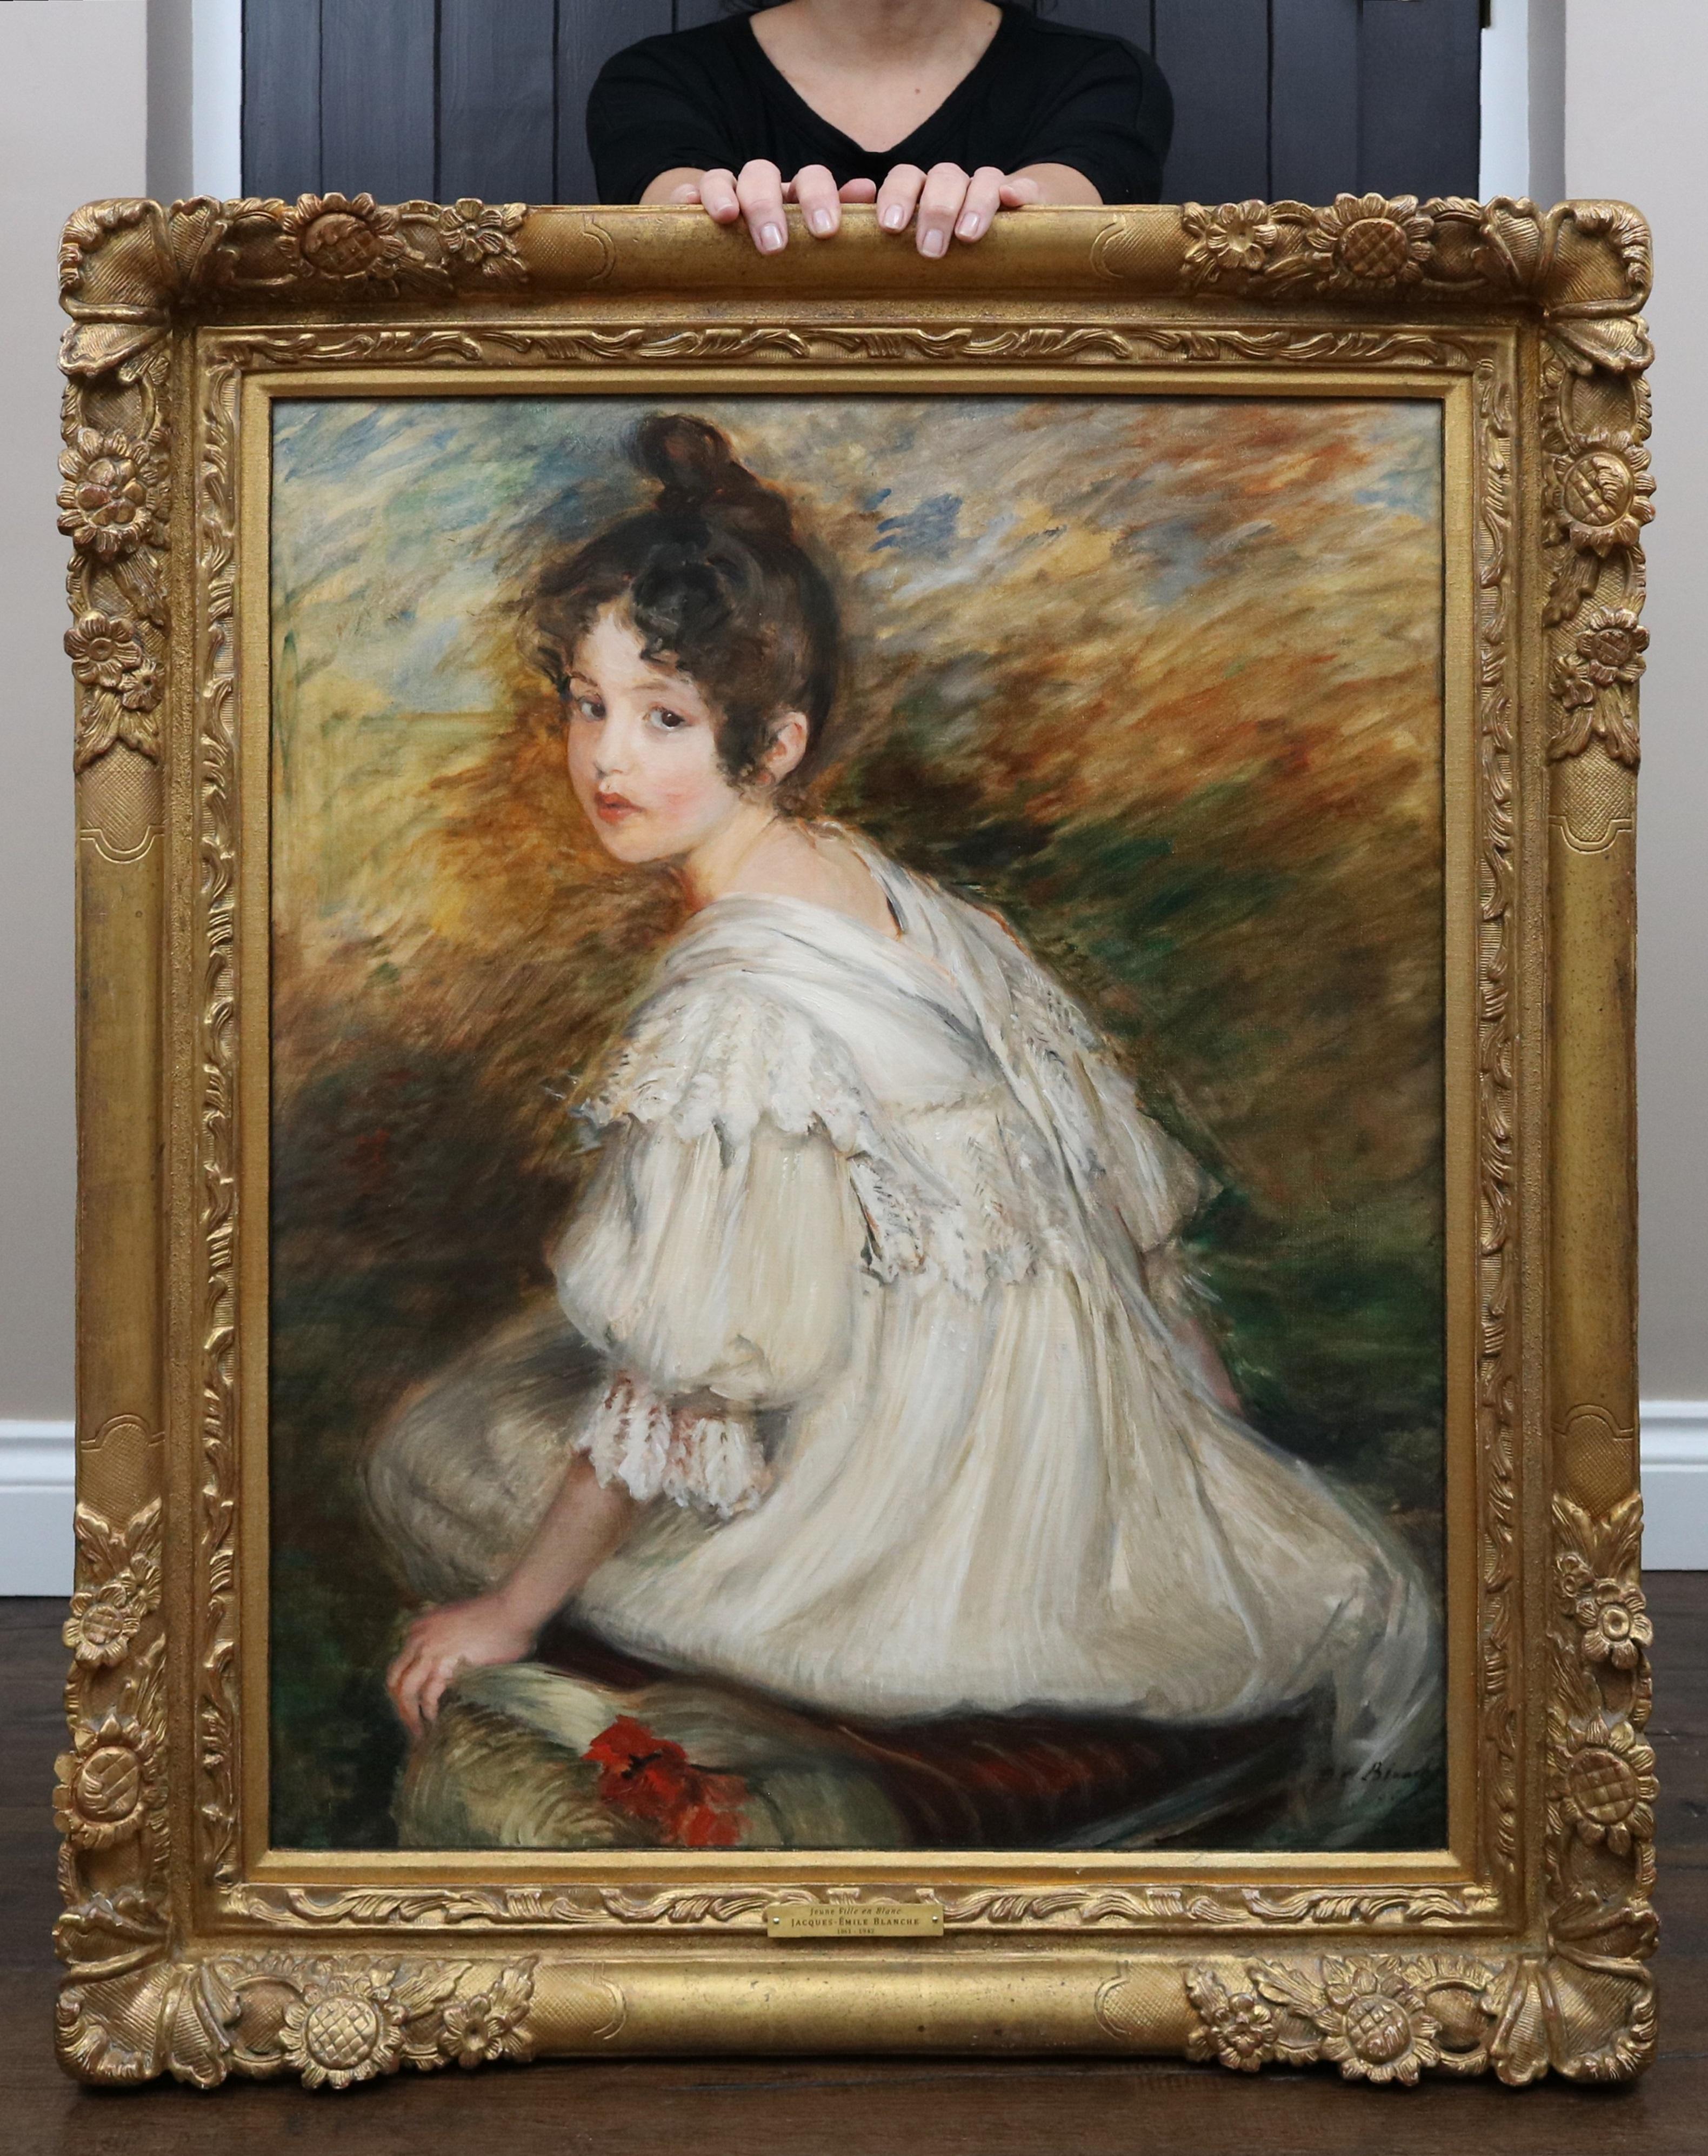 Jacques Emile Blanche Portrait Painting – Jeune Fille en Blanc - Ölgemälde des 19. Jahrhunderts, Porträt einer jungen Pariser Schönheit 